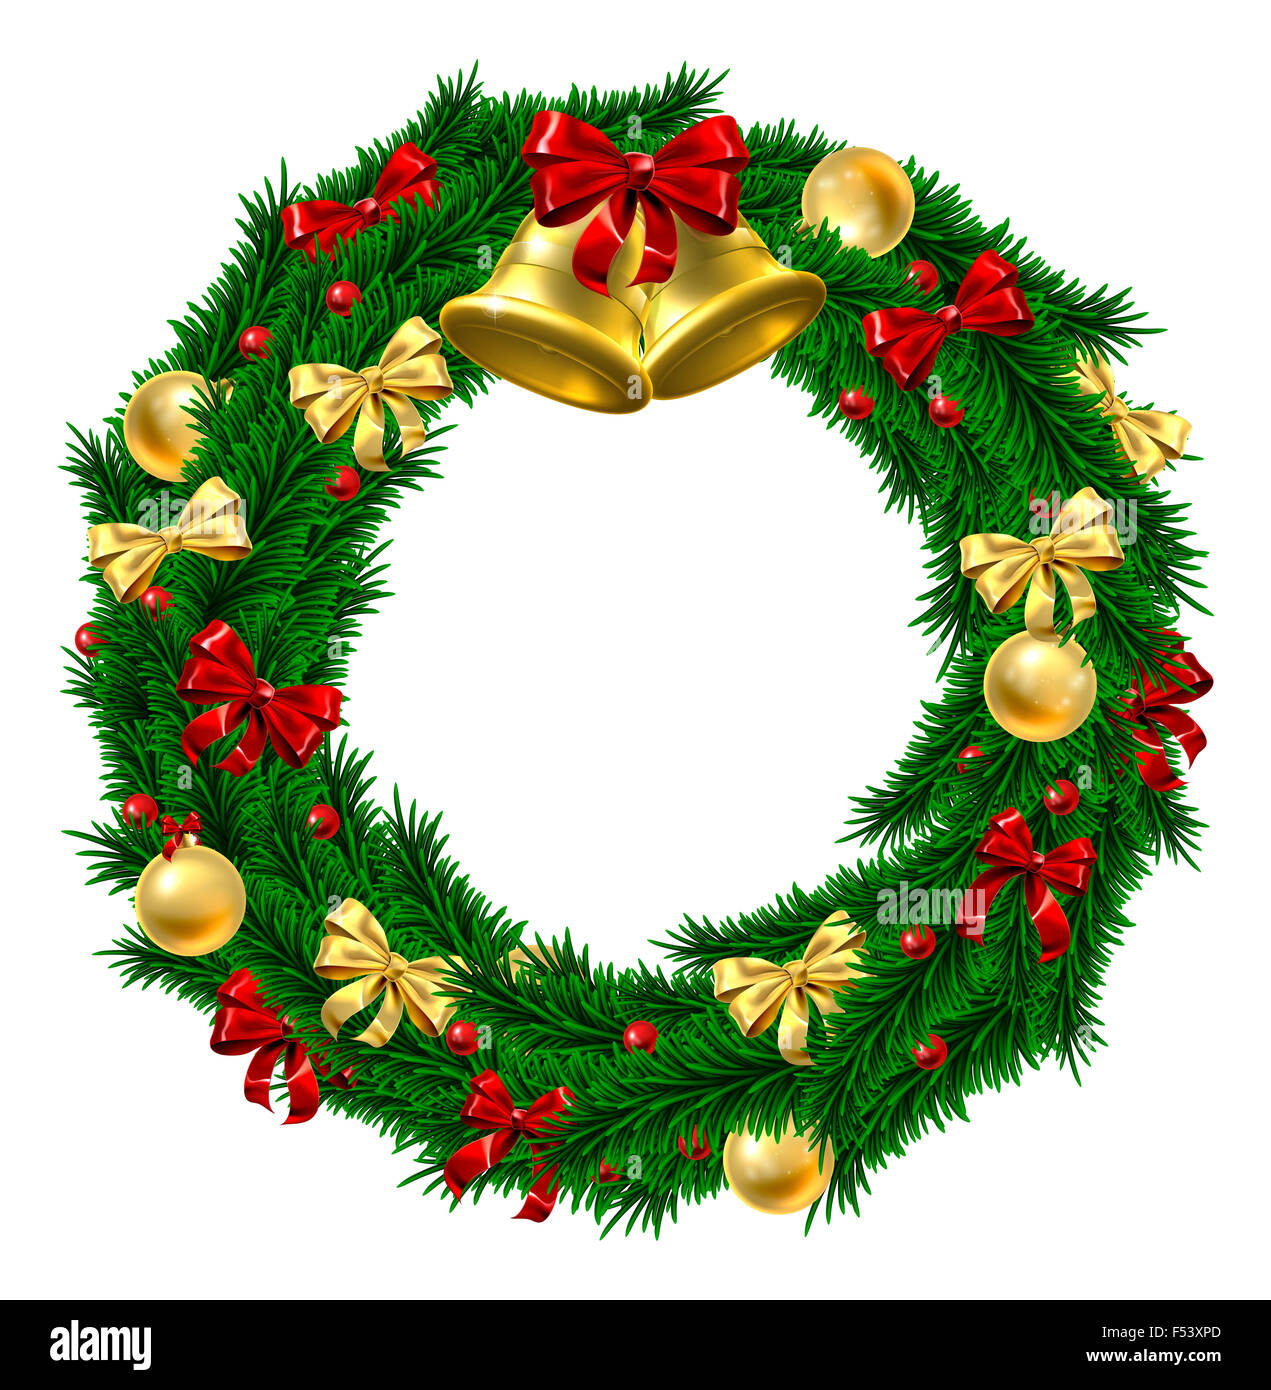 Eine Weihnachtsdekoration Tür Kranz mit gold und roten Schleifen und Bänder, Beeren der Stechpalme, gold Christbaumkugel Dekorationen und gold Glocken Stockfoto